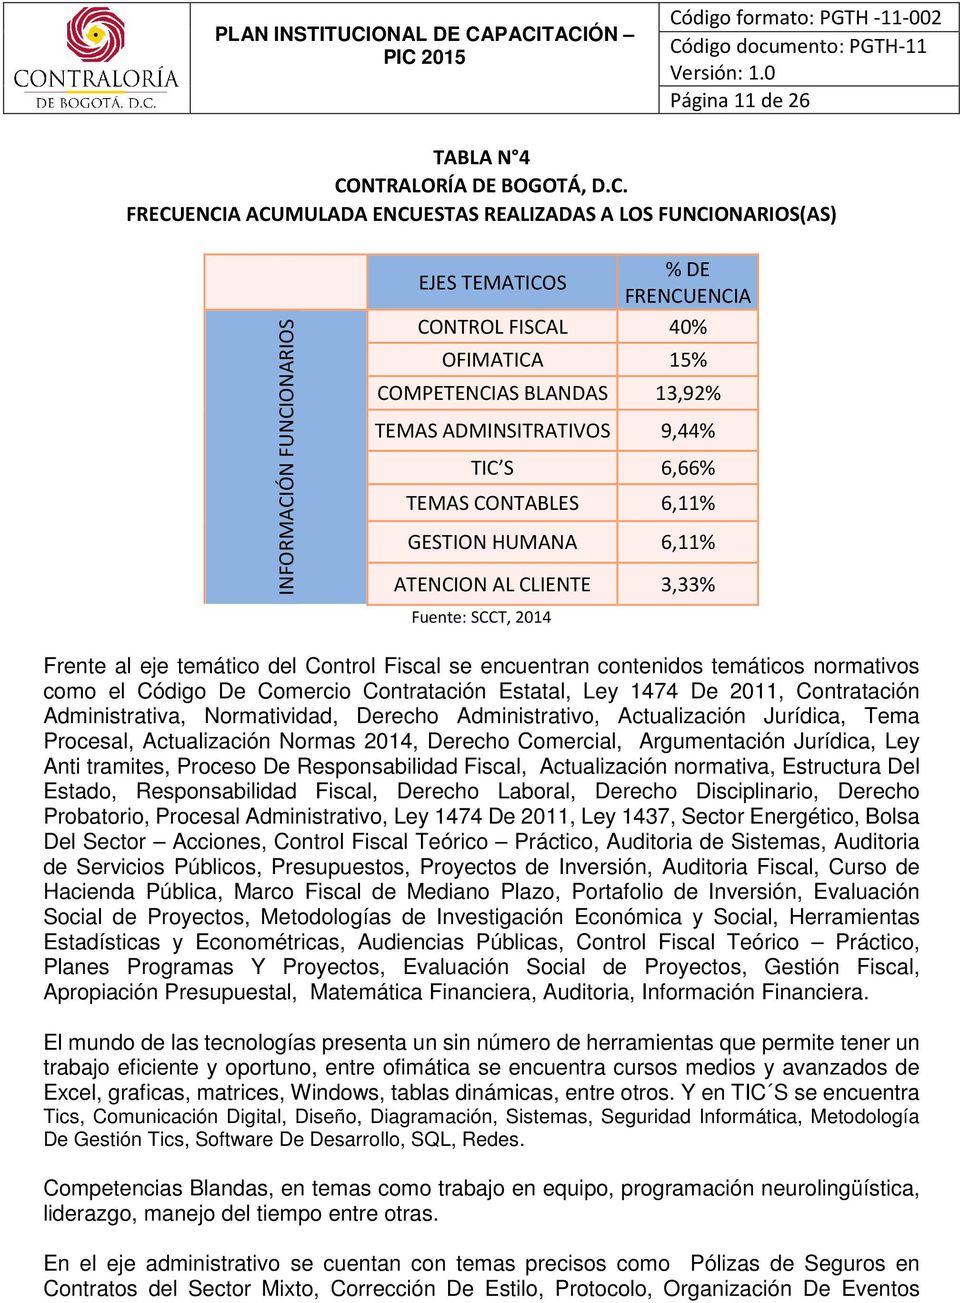 FRECUENCIA ACUMULADA ENCUESTAS REALIZADAS A LOS FUNCIONARIOS(AS) INFORMACIÓN FUNCIONARIOS EJES TEMATICOS % DE FRENCUENCIA CONTROL FISCAL 40% OFIMATICA 15% COMPETENCIAS BLANDAS 13,92% TEMAS